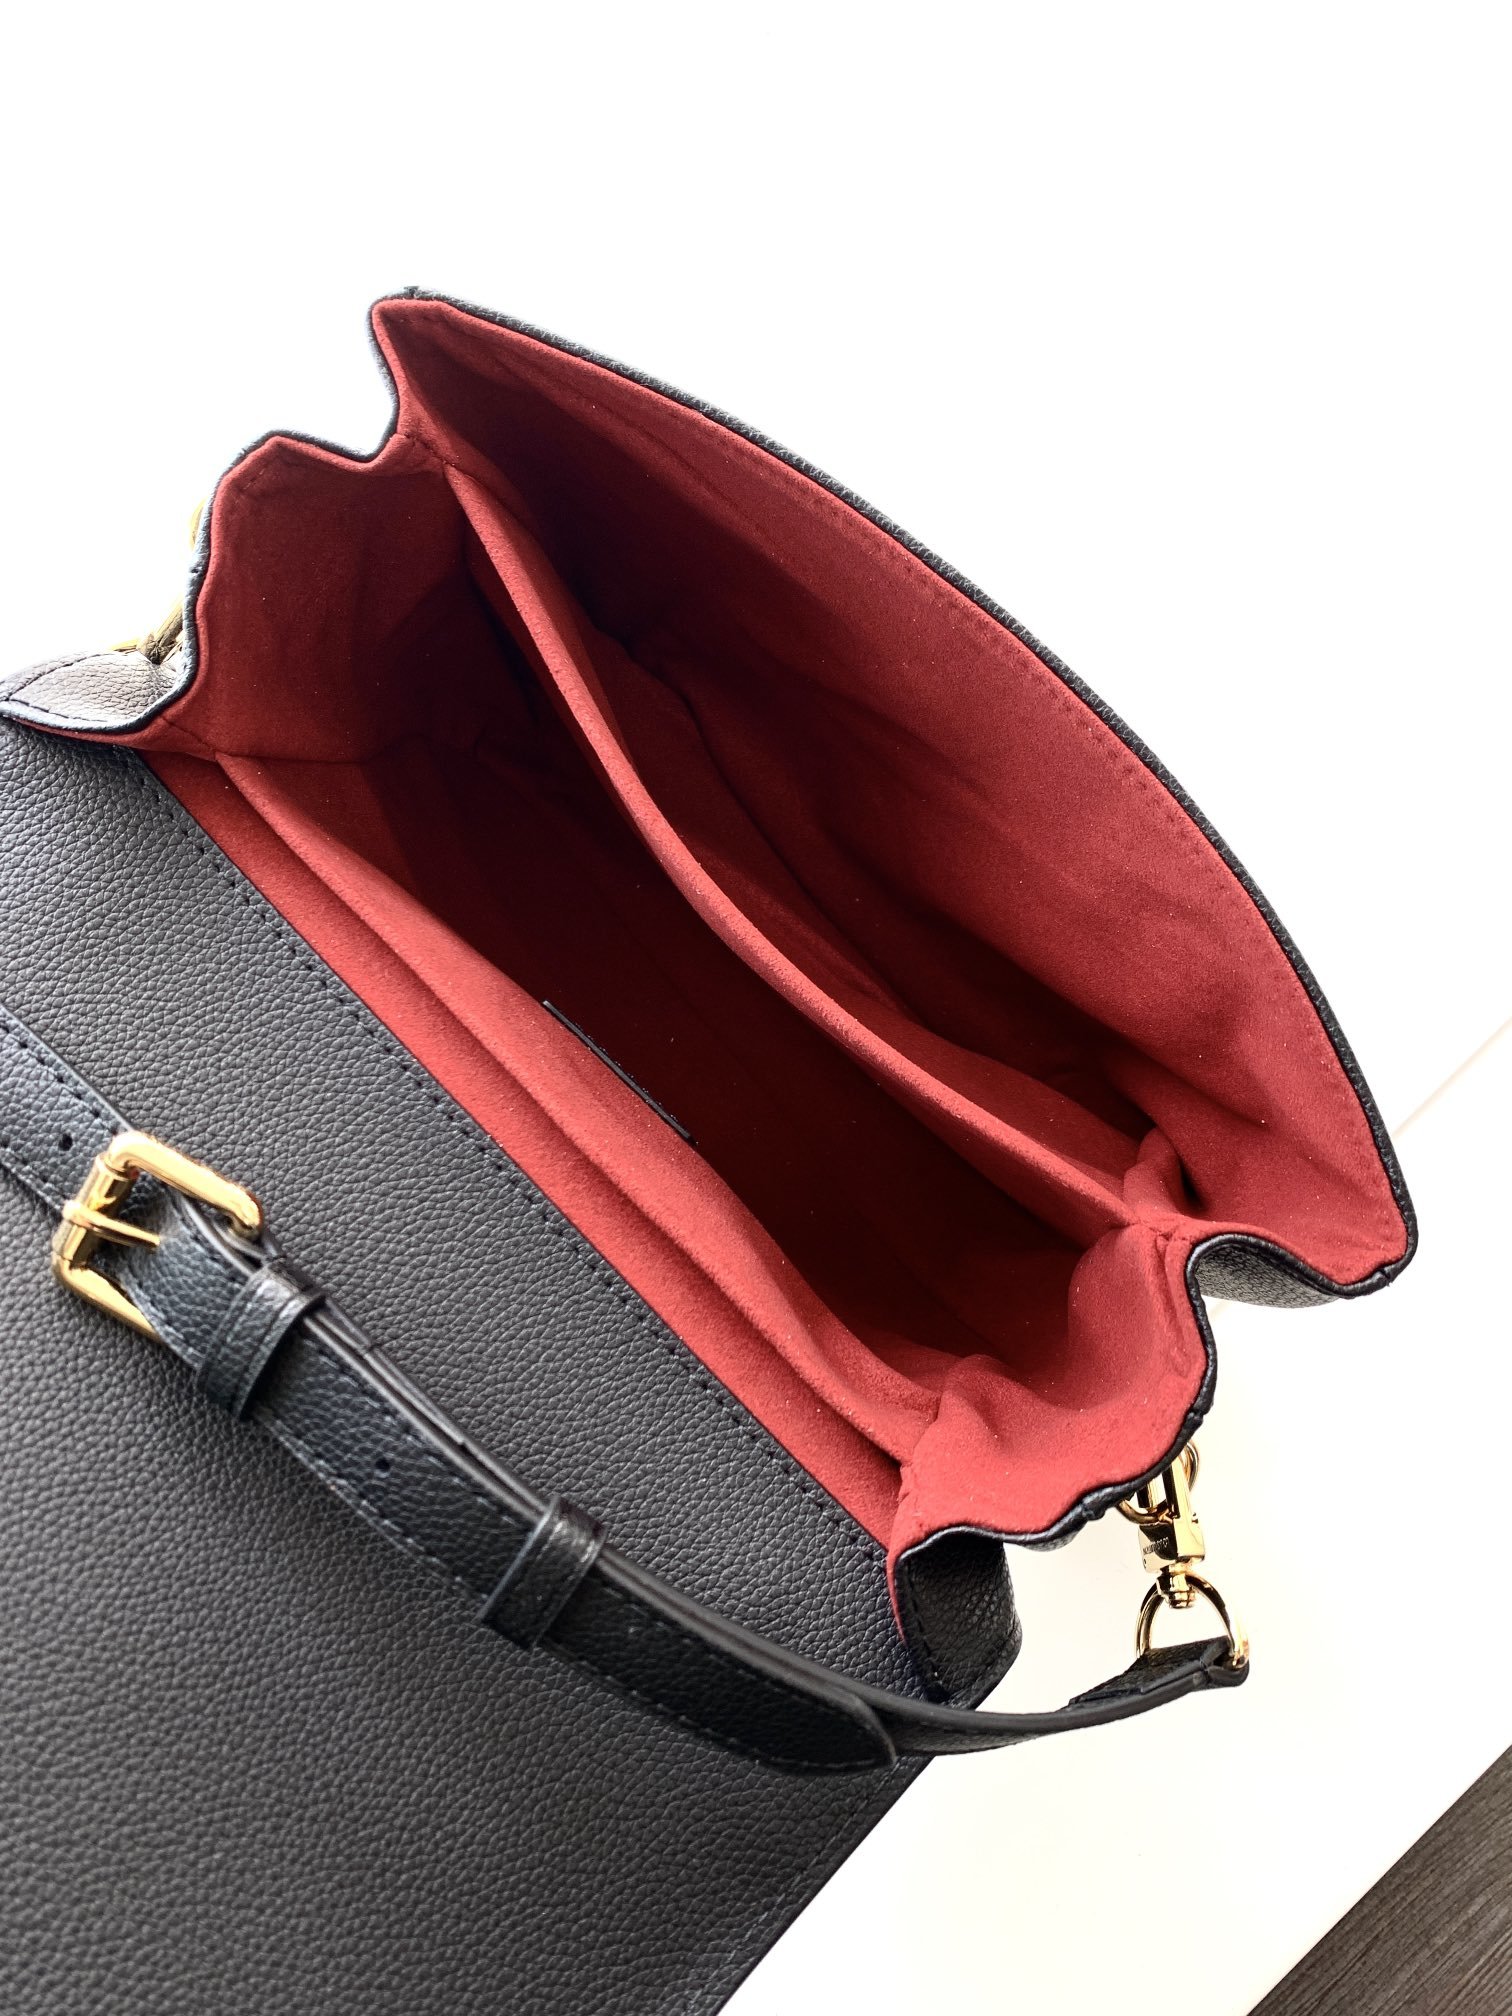 A bag Pochette Metis Shoulder bag 25 cm фото 9